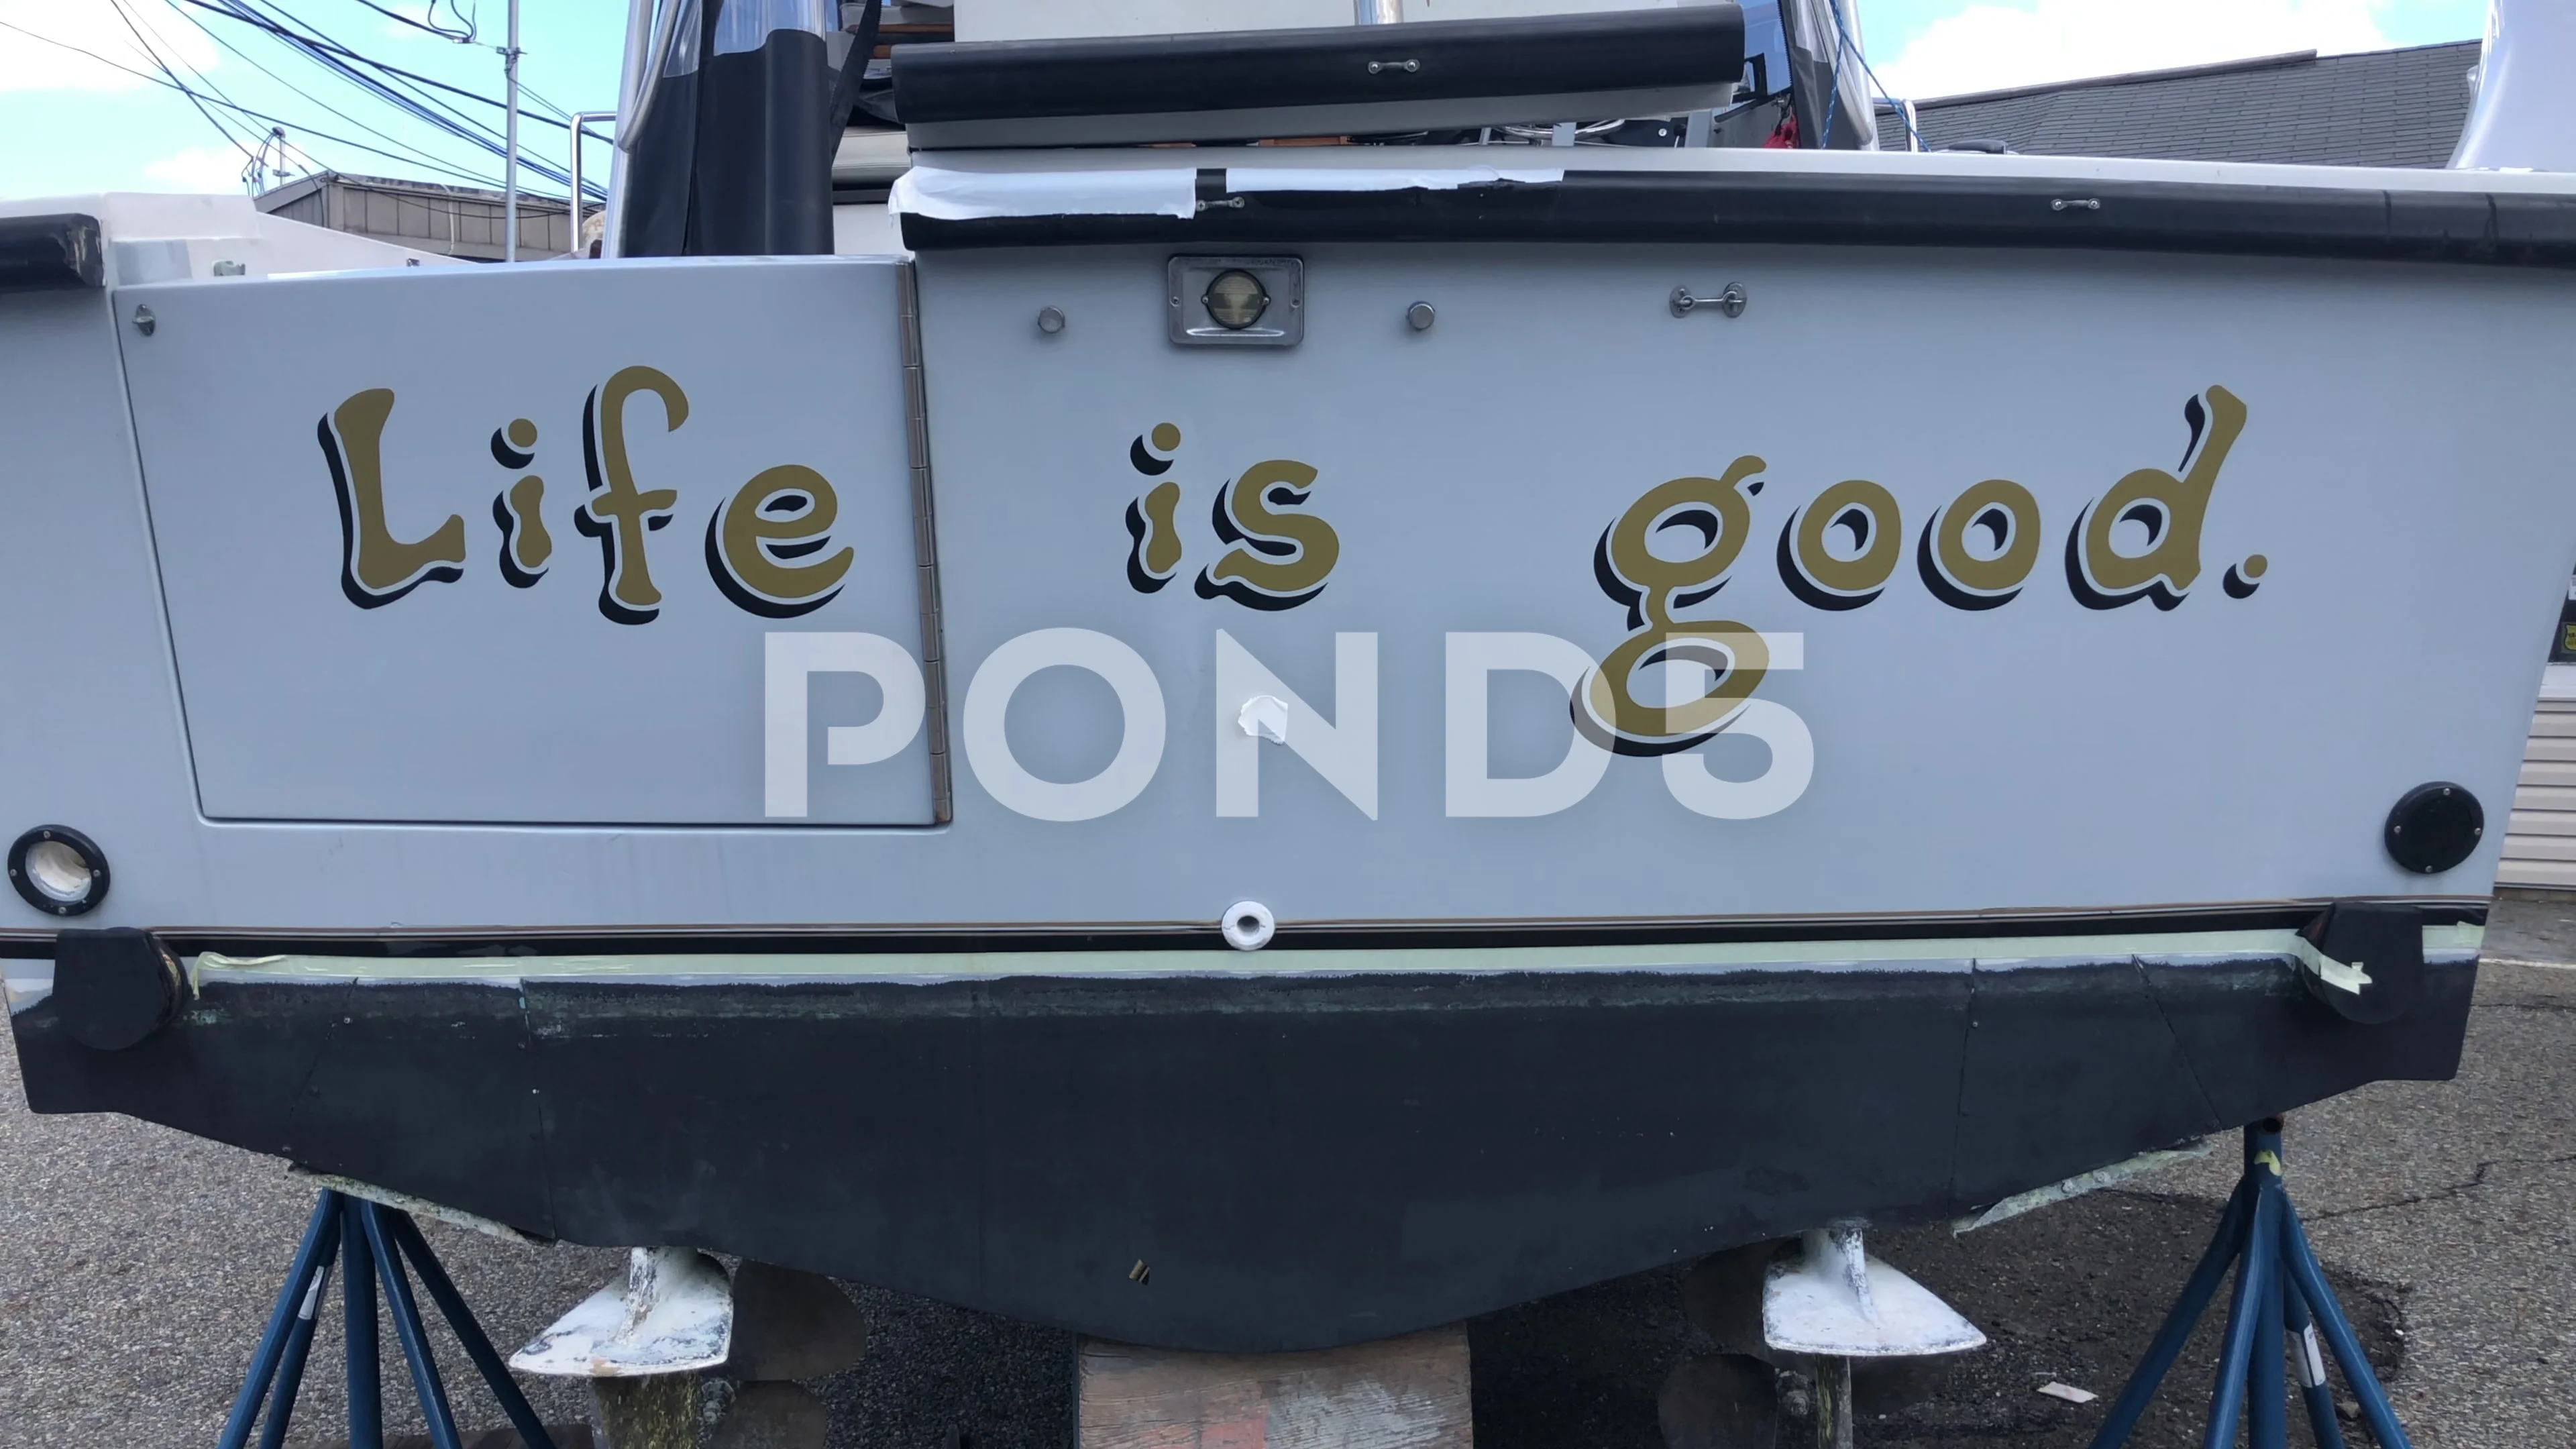 https://images.pond5.com/life-good-name-boat-footage-248965084_prevstill.jpeg